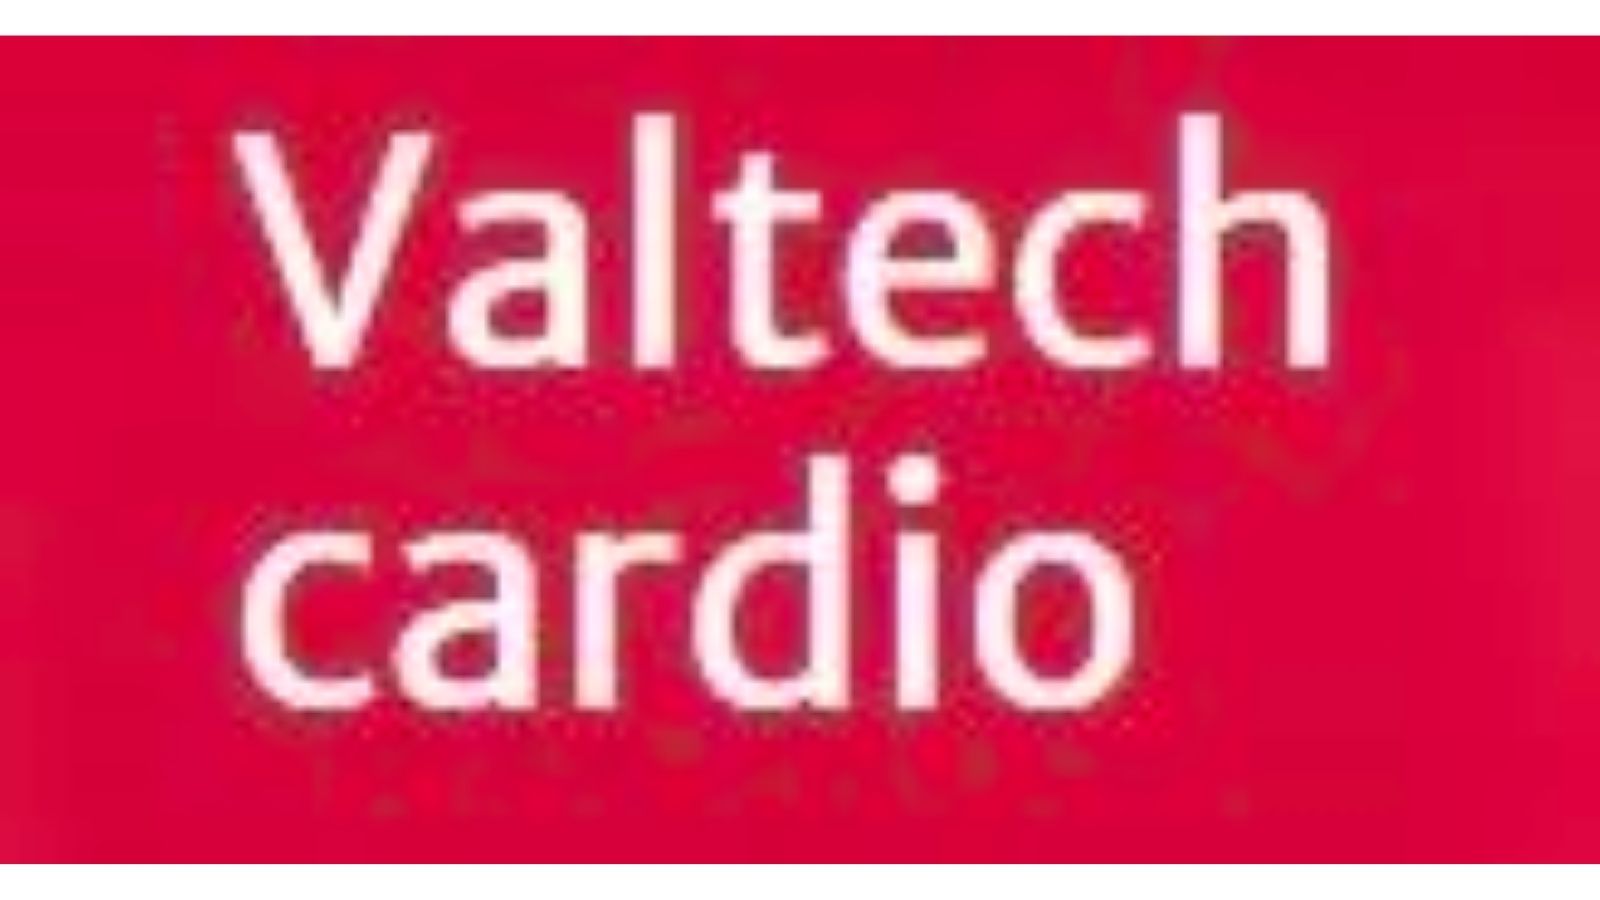 Valtech Cardio ，专门从事二尖瓣修复和更换设备的开发